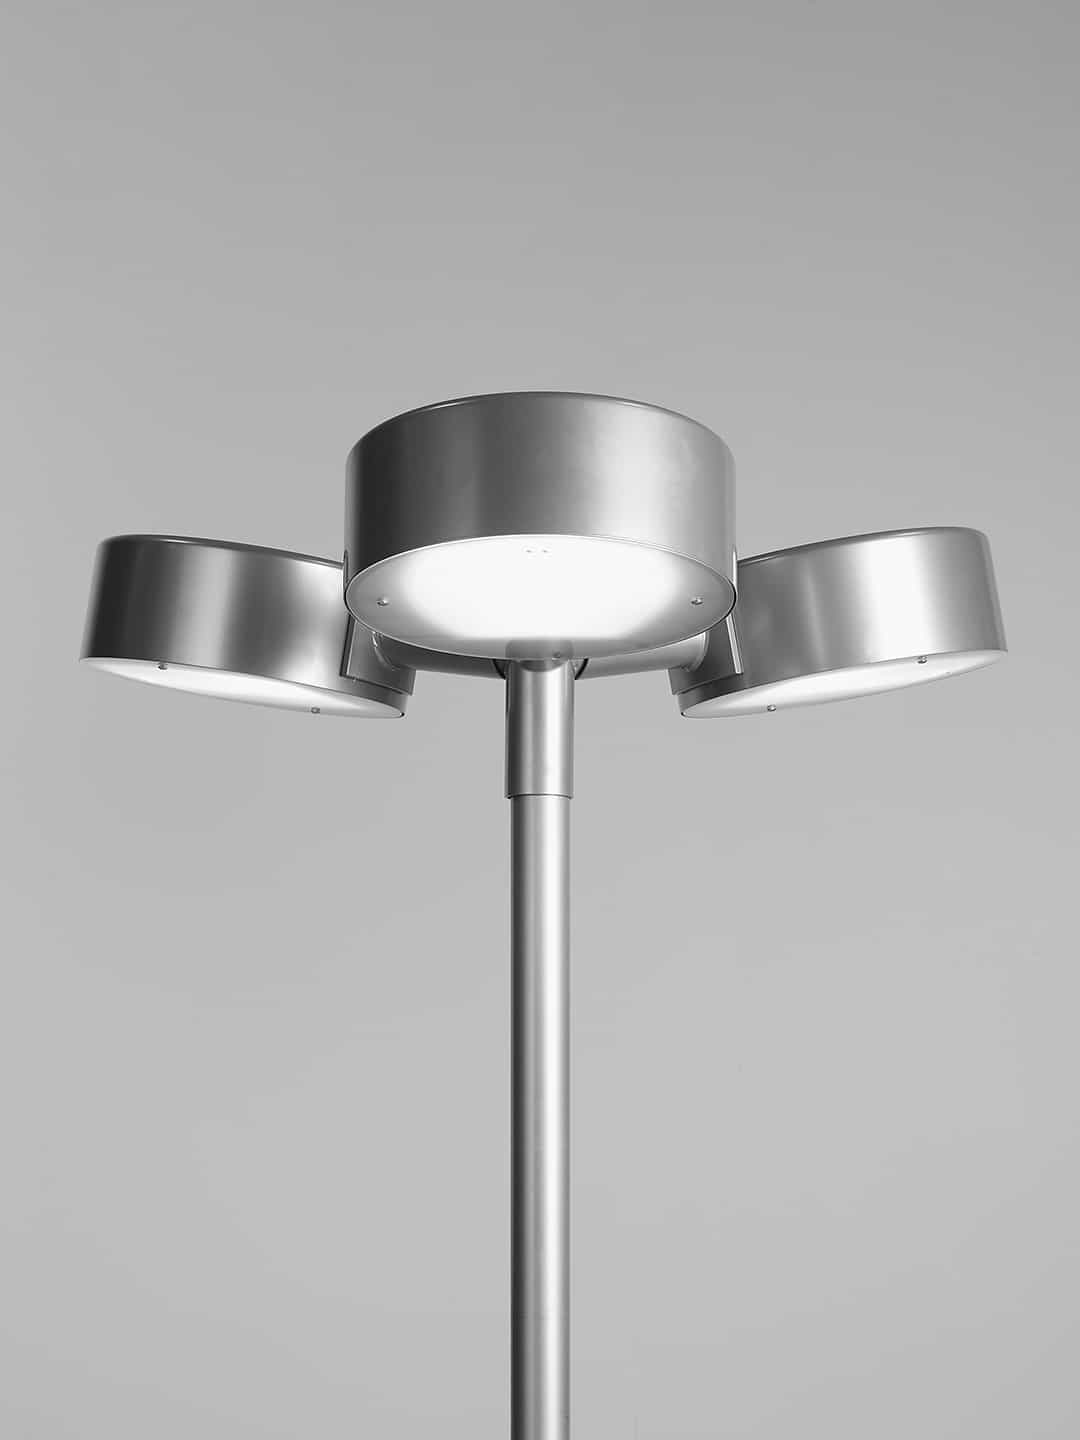 Металлический уличный фонарь Zero Lighting Pole Trepuck в скандинавском стиле